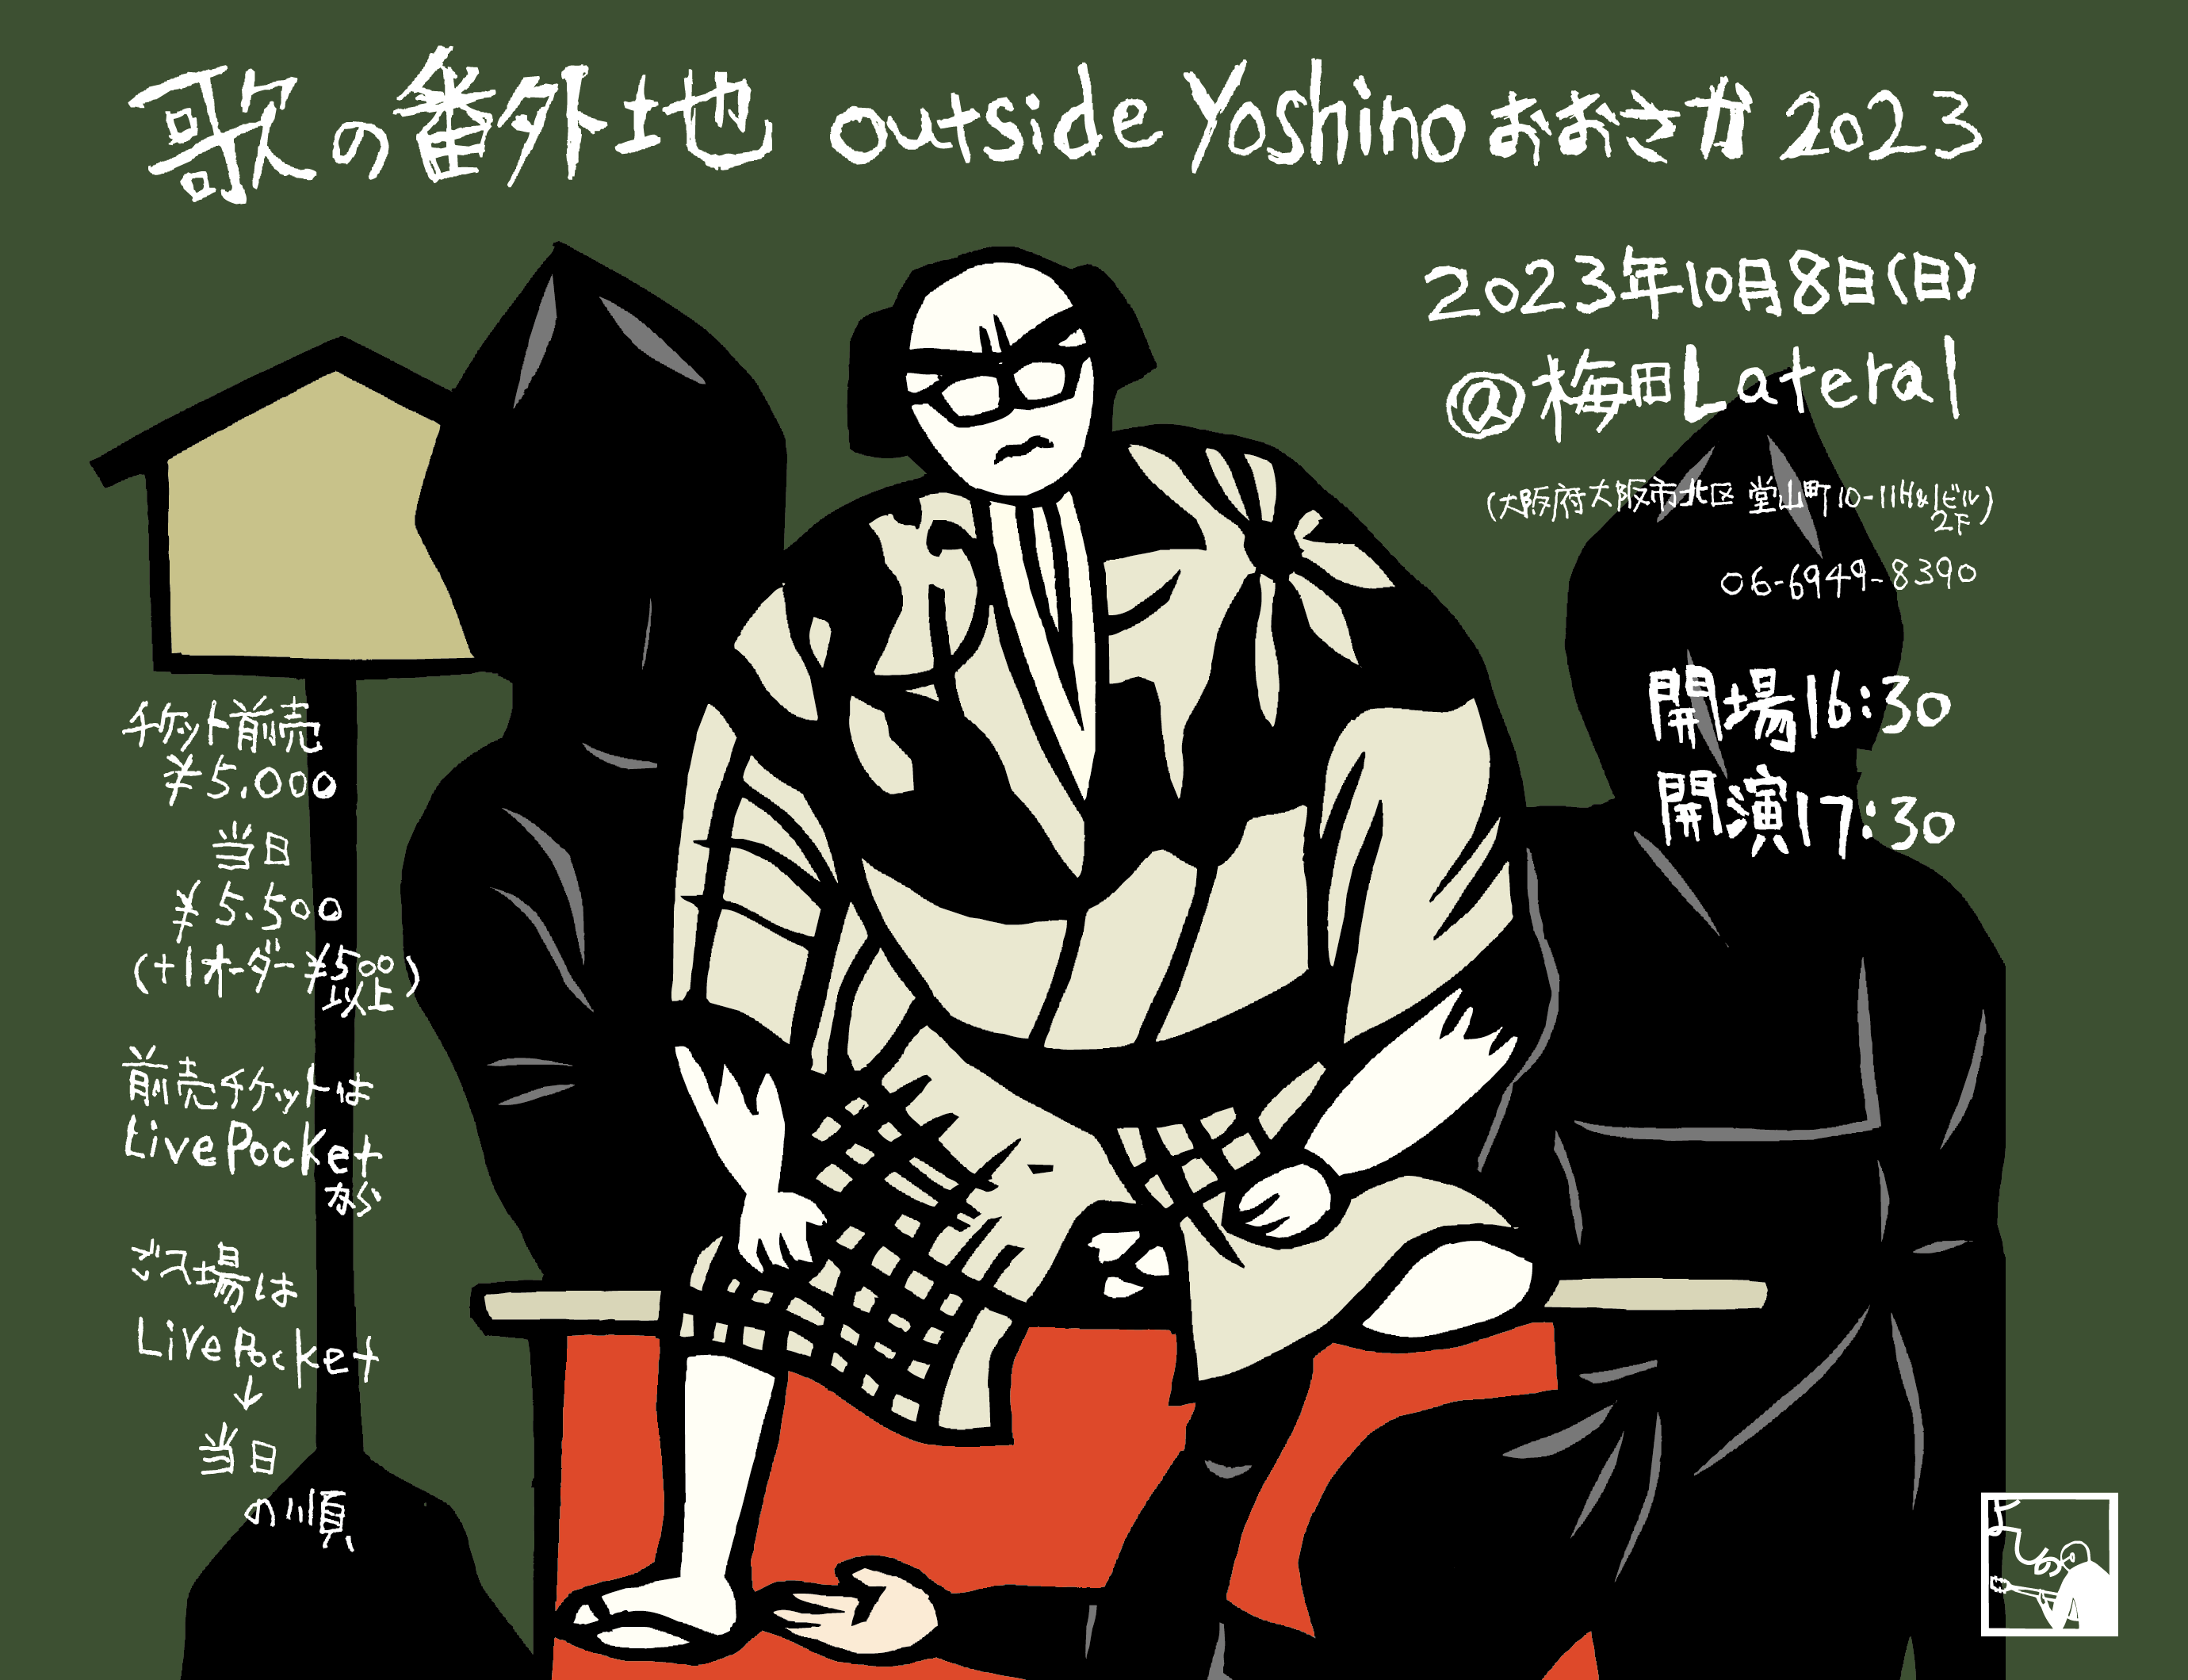 『歌の番外地 outside yoshino おおさか 2023』